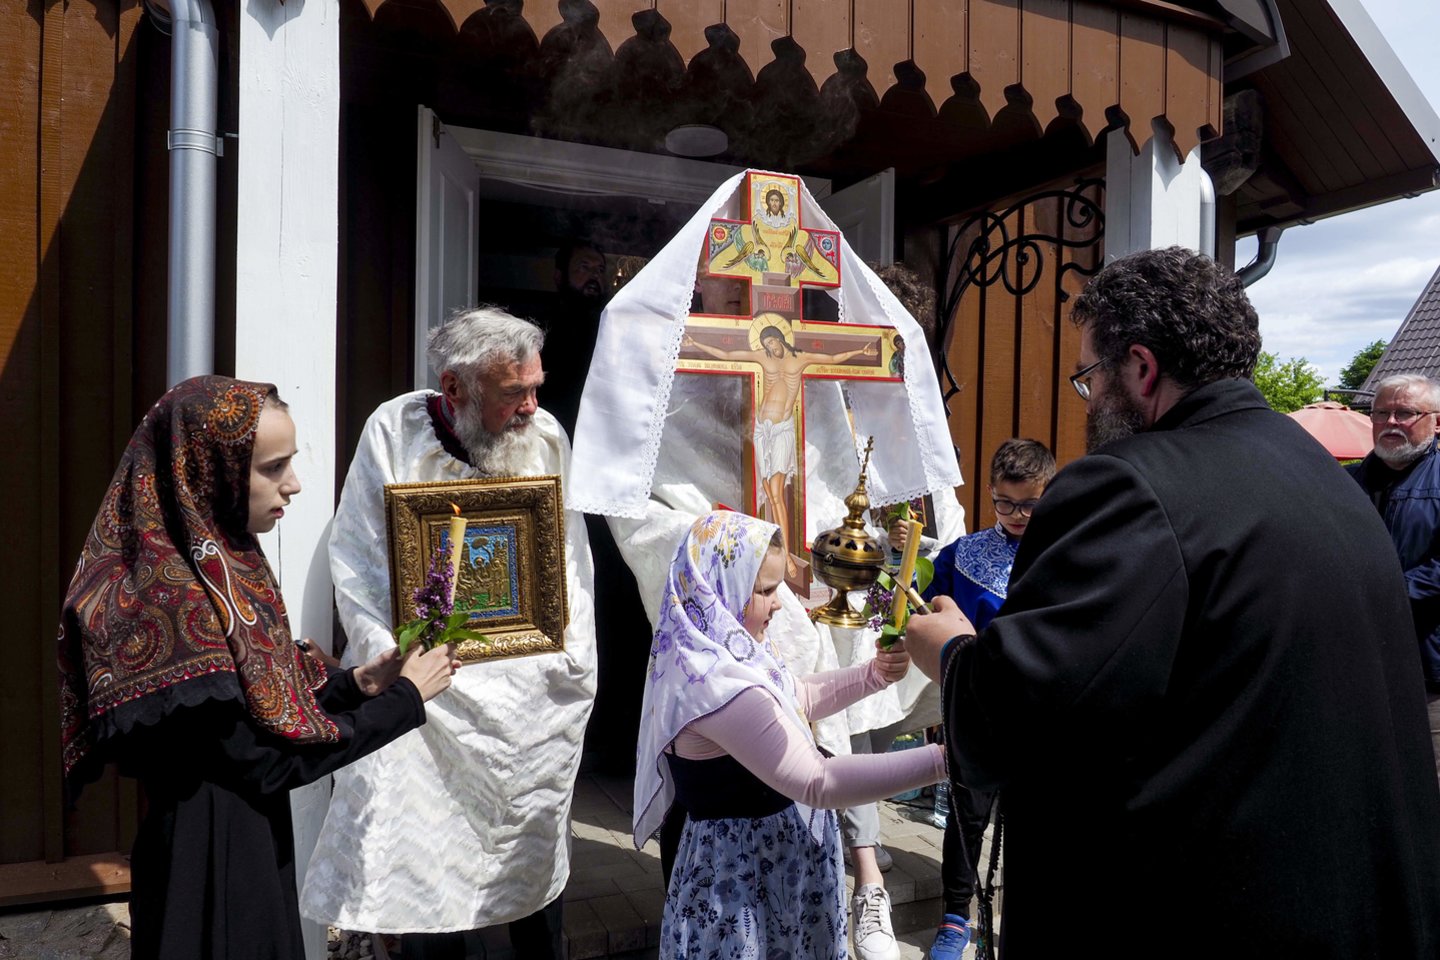 Nuošaliame ir tyliame Daniliškių kaime (Trakų r.) sekmadienį buvo šventė. Mat duris pagaliau atvėrė Švč. Trejybės sentikių cerkvė.<br>V. Ščiavinsko nuotr.